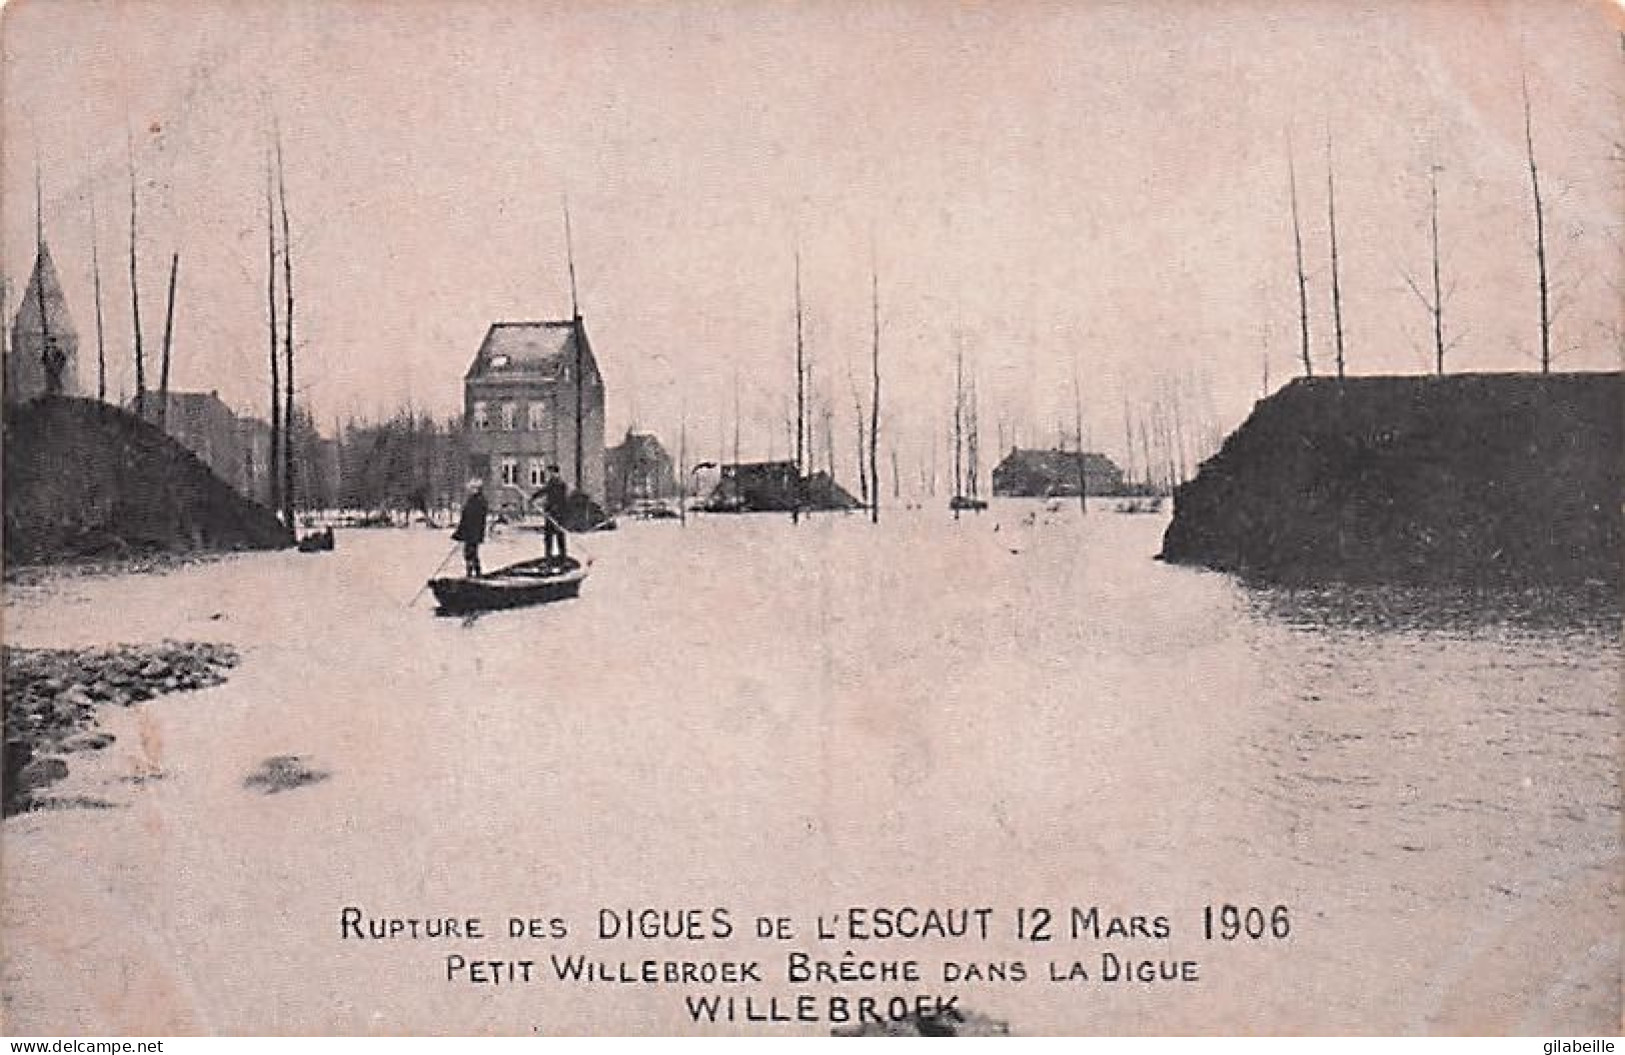  Antwerpen - Anvers -  Willebroek - Willebroeck  -rupture Des Digues De L'Escaut 12 Mars 1906 - Willebroek